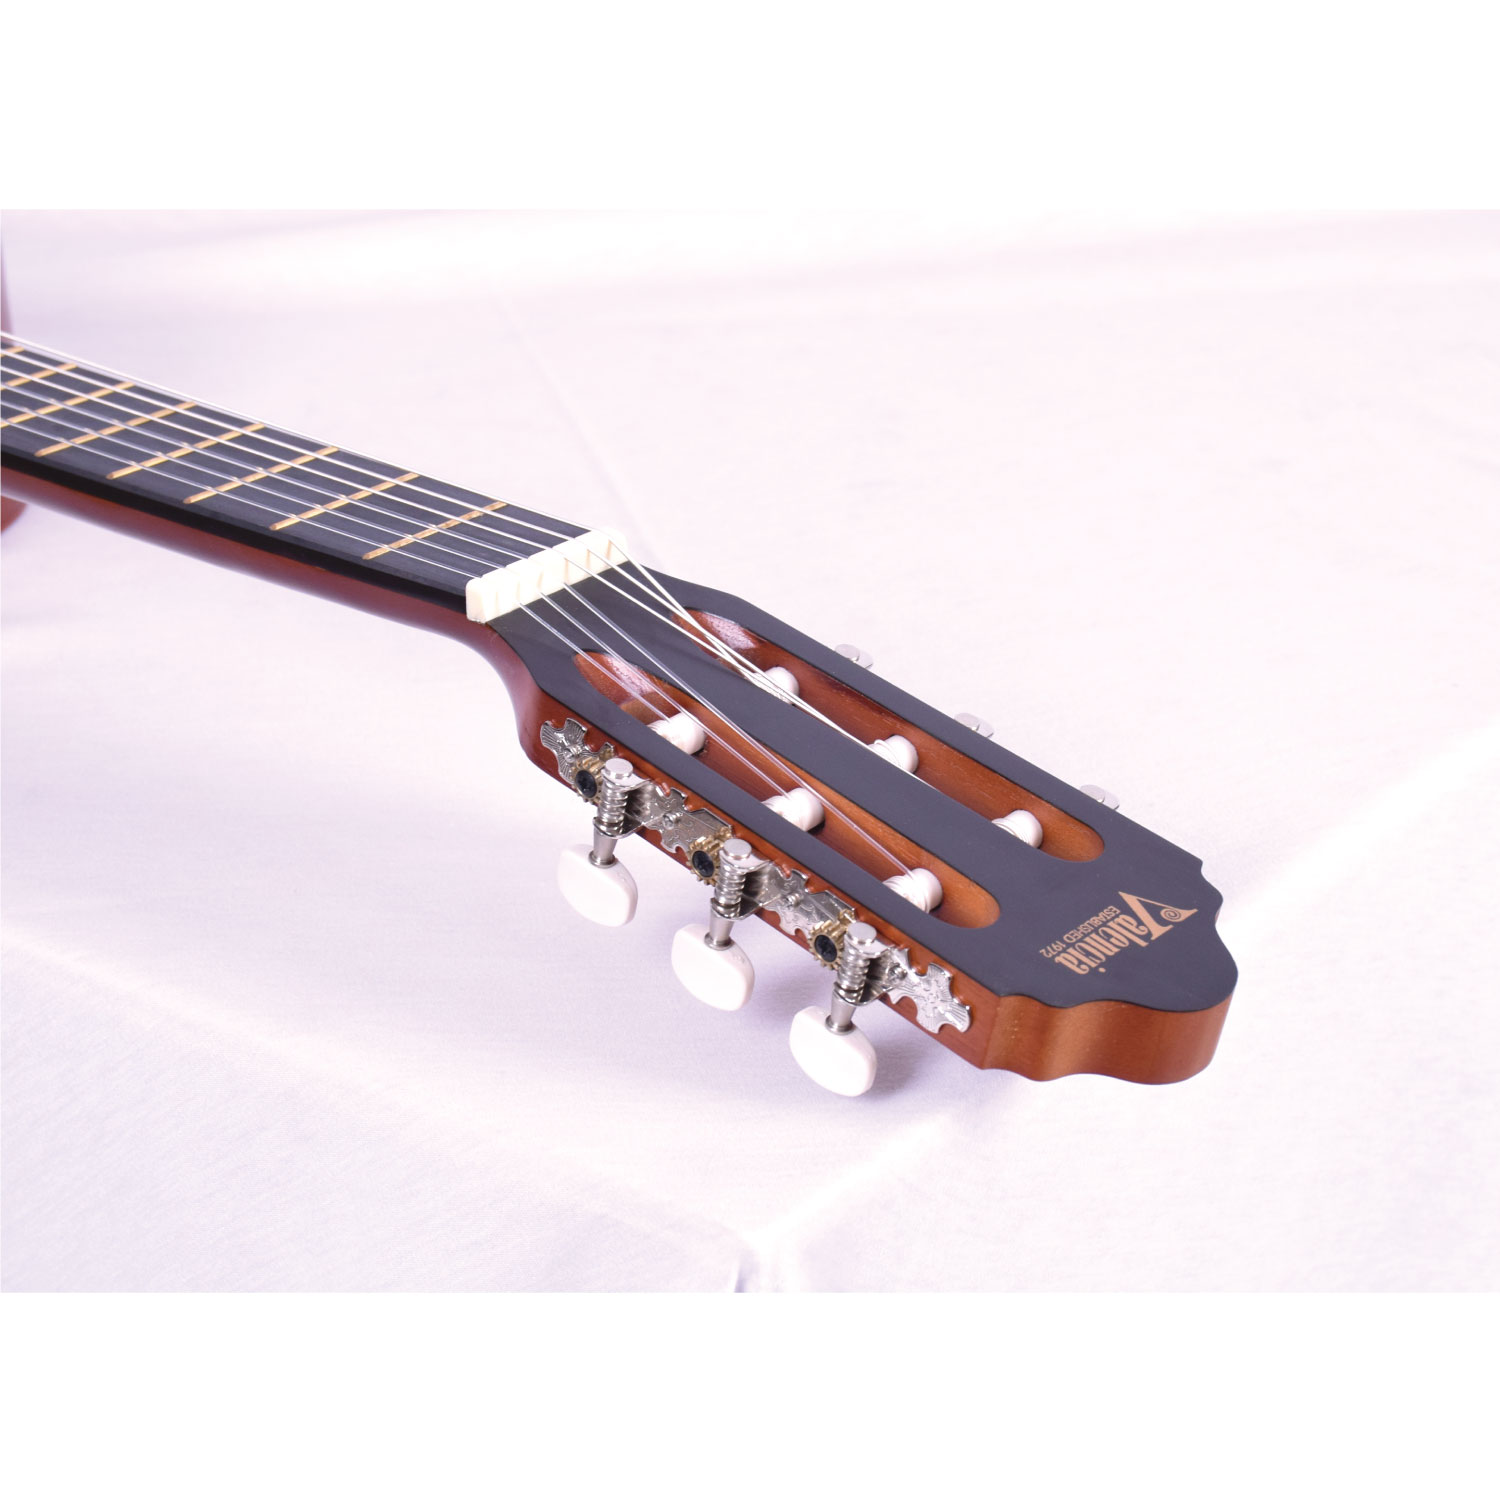 【VALENCIA】シトカ・スプルーストップ、 3/4サイズの クラシックギターが登場。